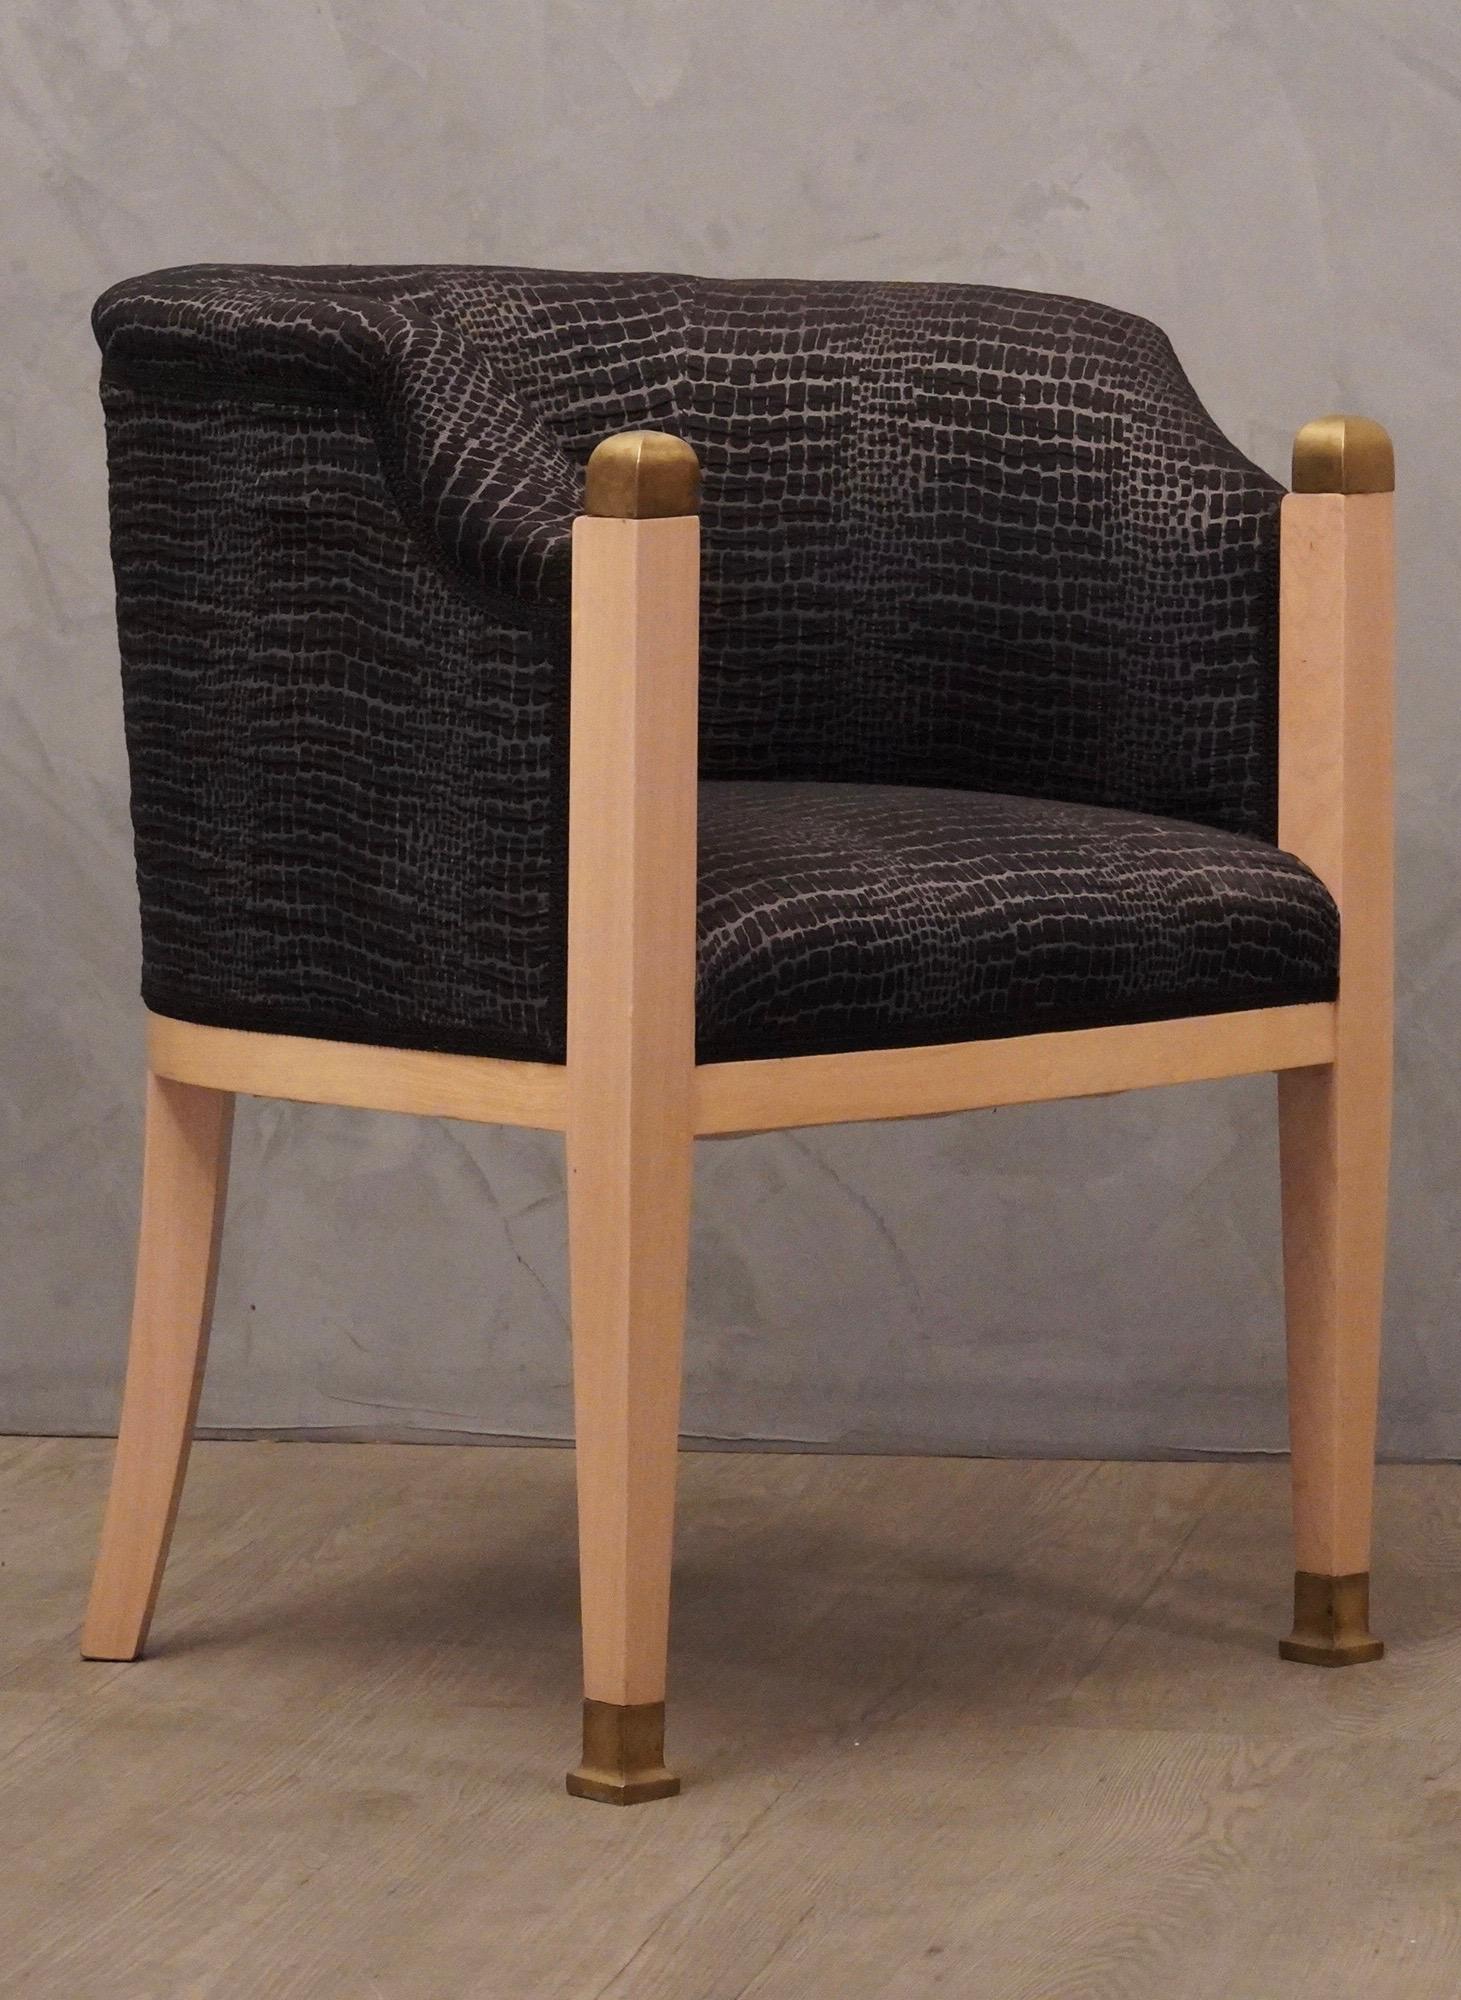 Charakteristische und kostbare österreichische Sessel aus gebleichtem Ahornholz mit reichen Messingeinsätzen, die mit einem schönen schwarz-silbernen Stoff kombiniert sind.

Die Sessel haben eine Ahornstruktur; das Holz wurde gebleicht und